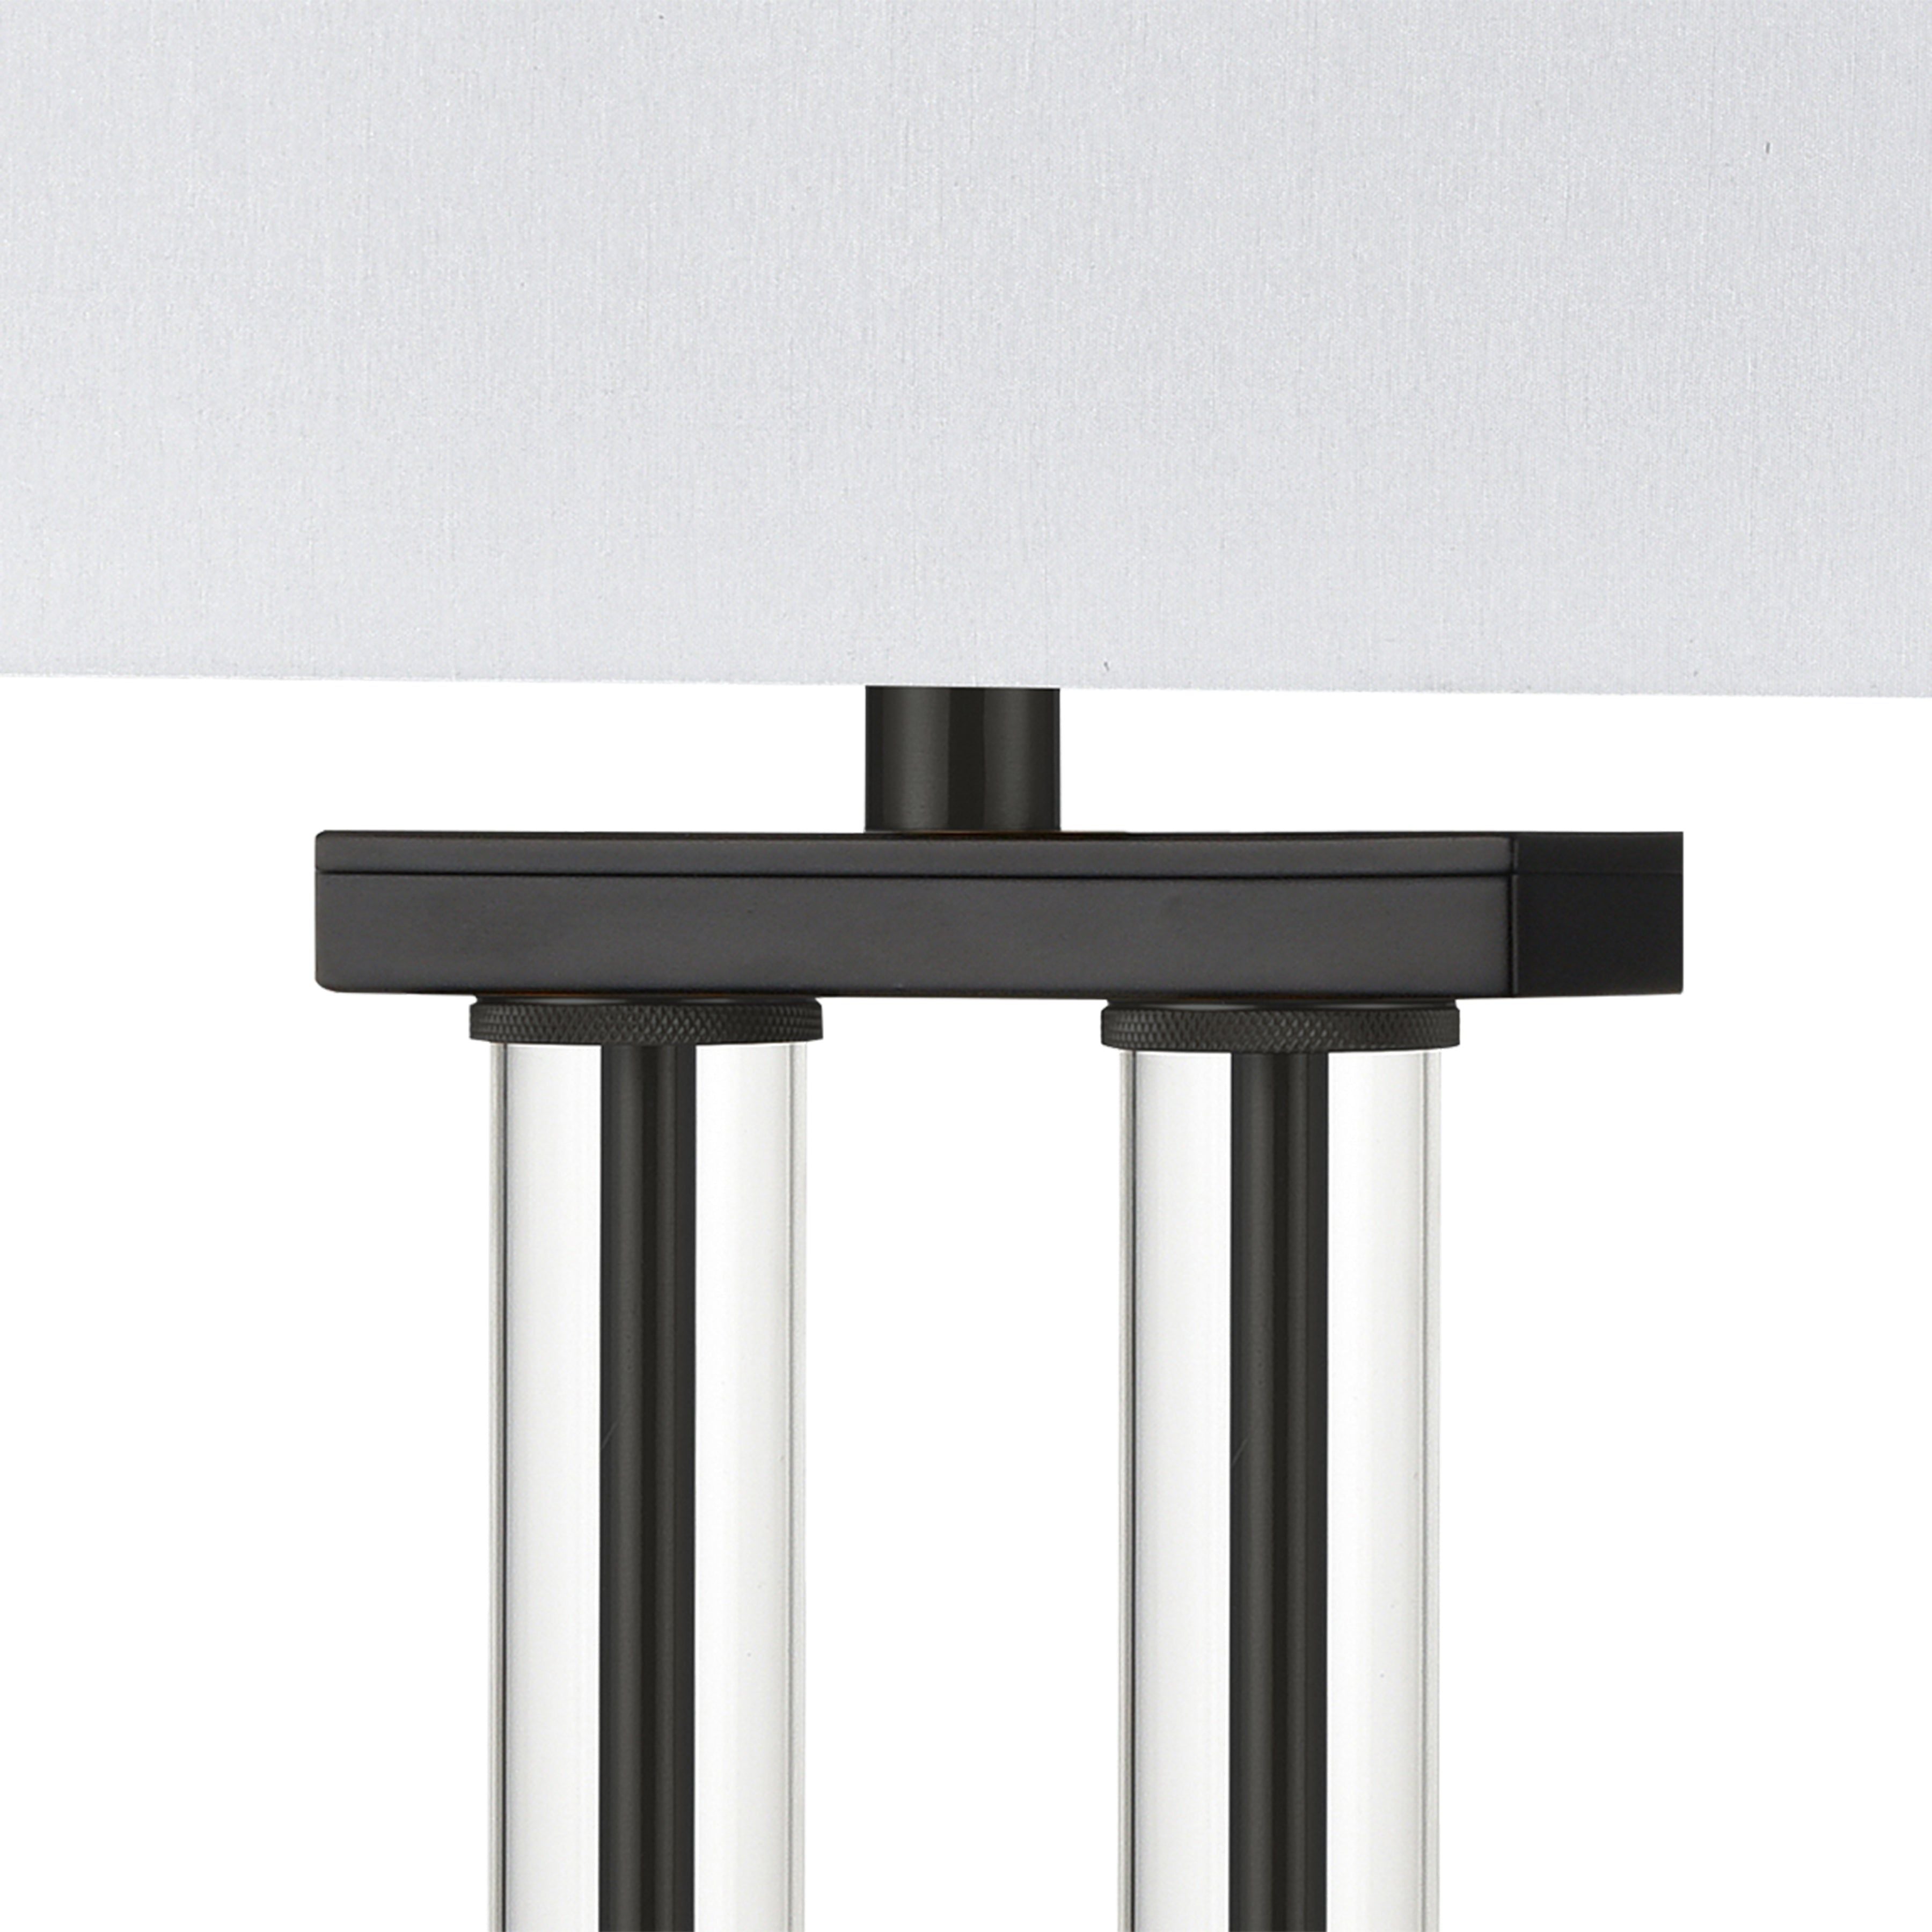 Roseden Court 34" High 1-Light Table Lamp